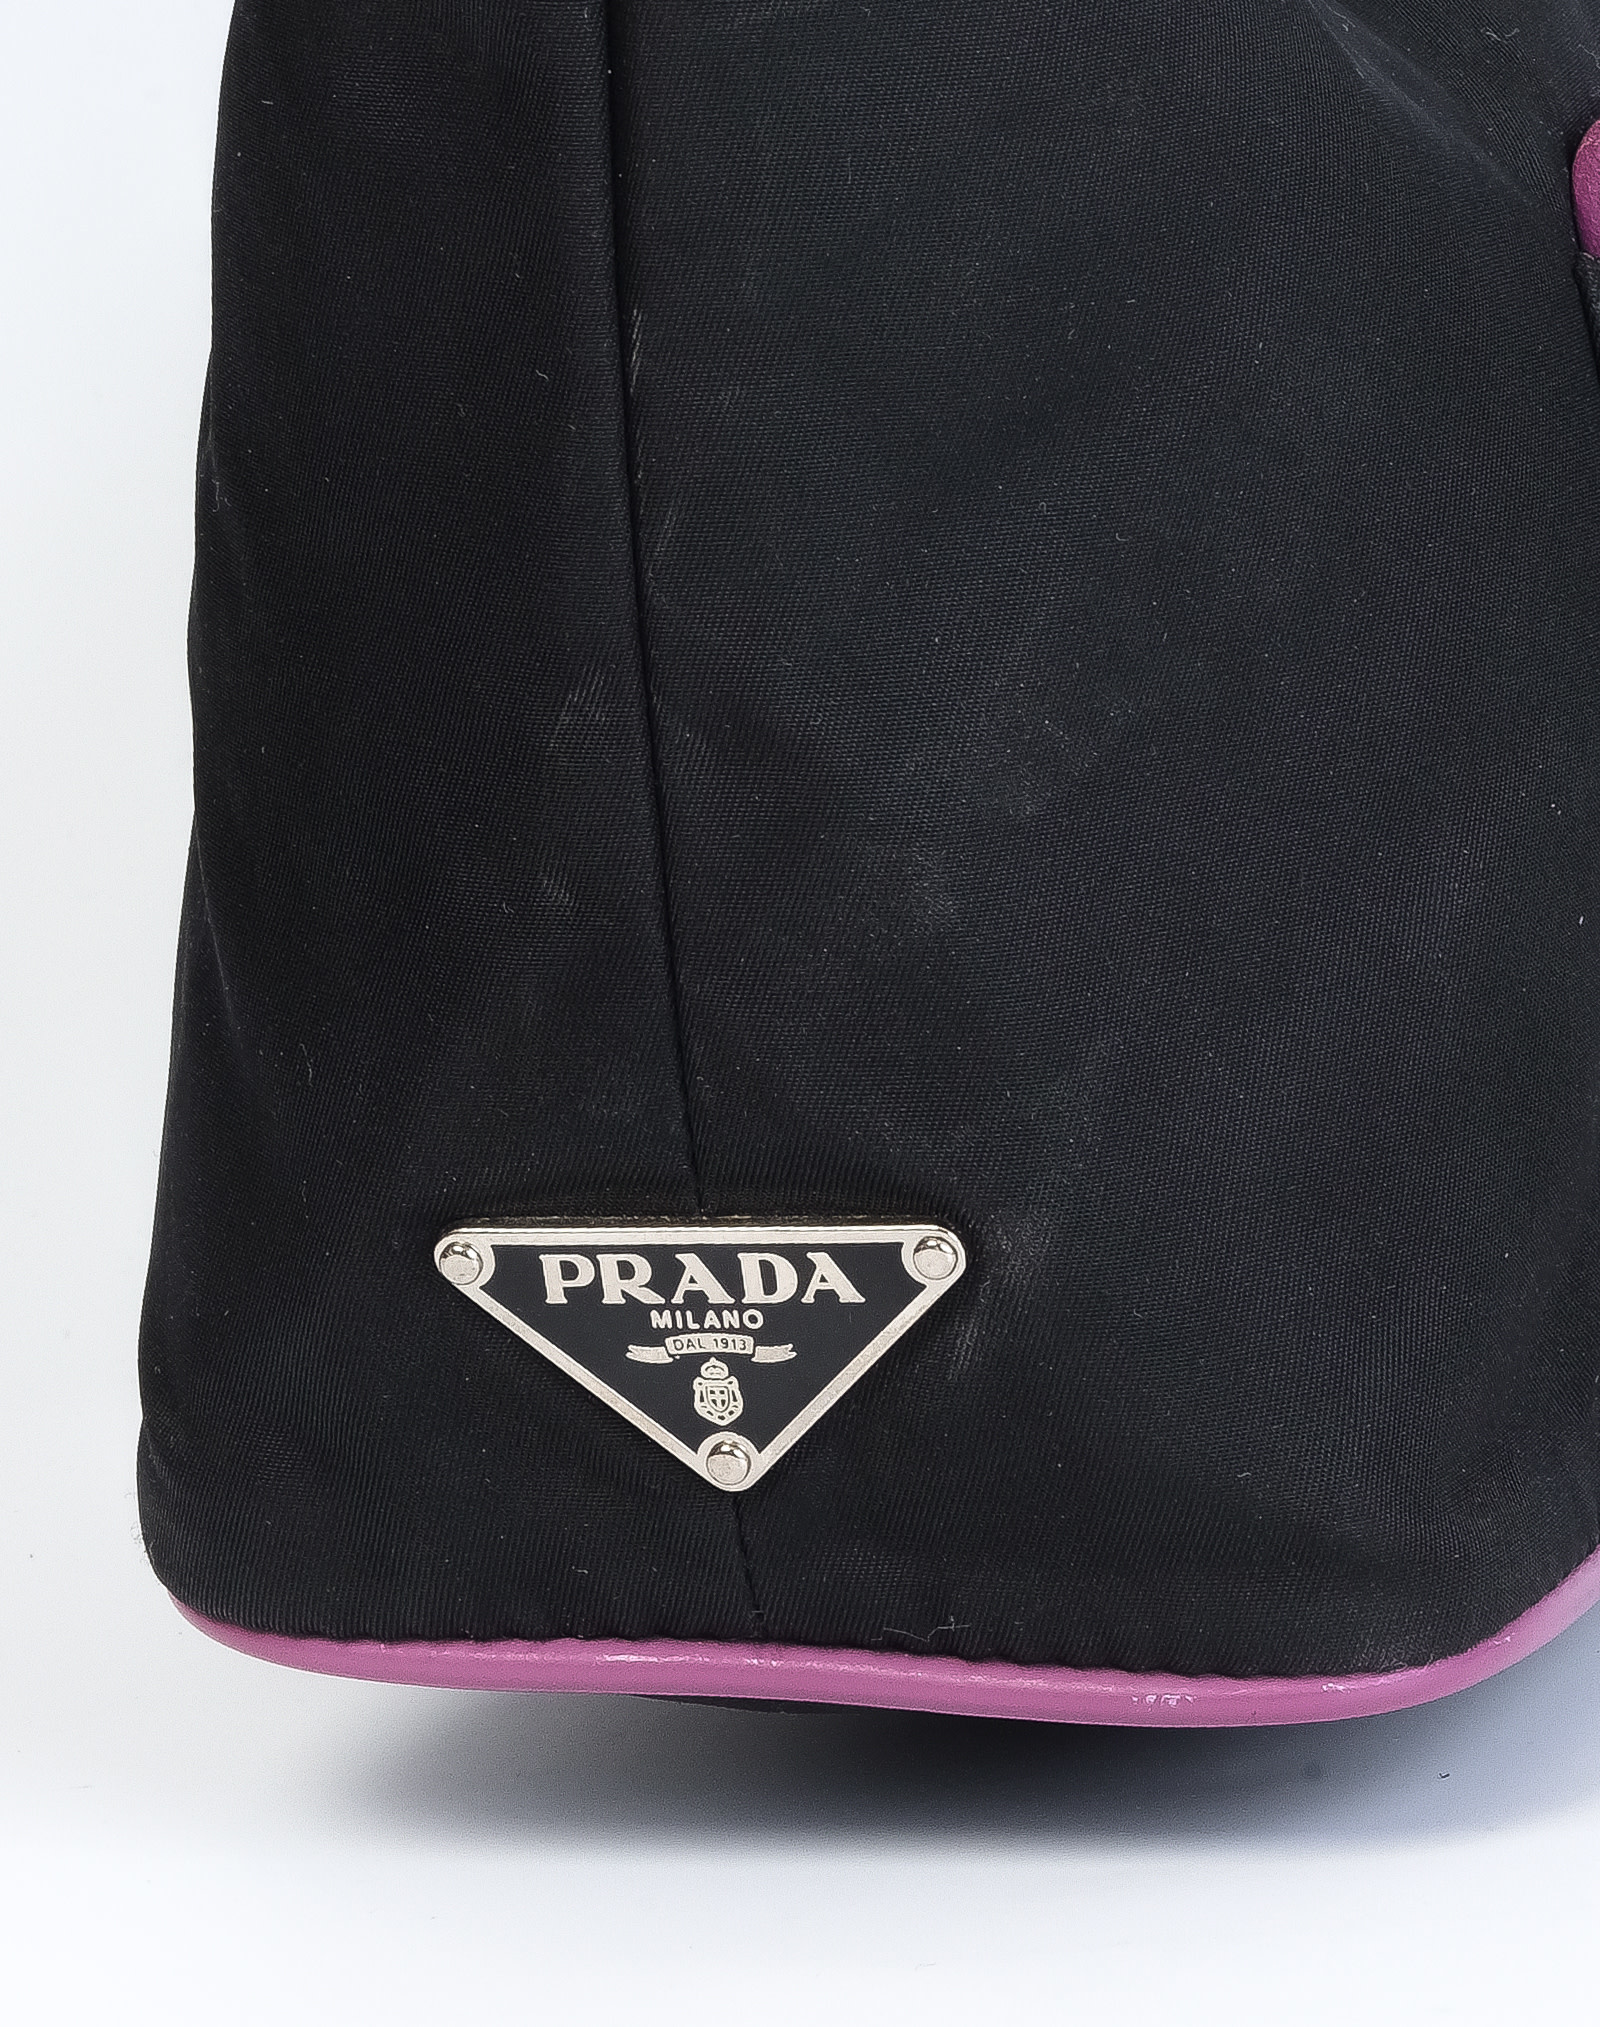 Vintage Prada Bags